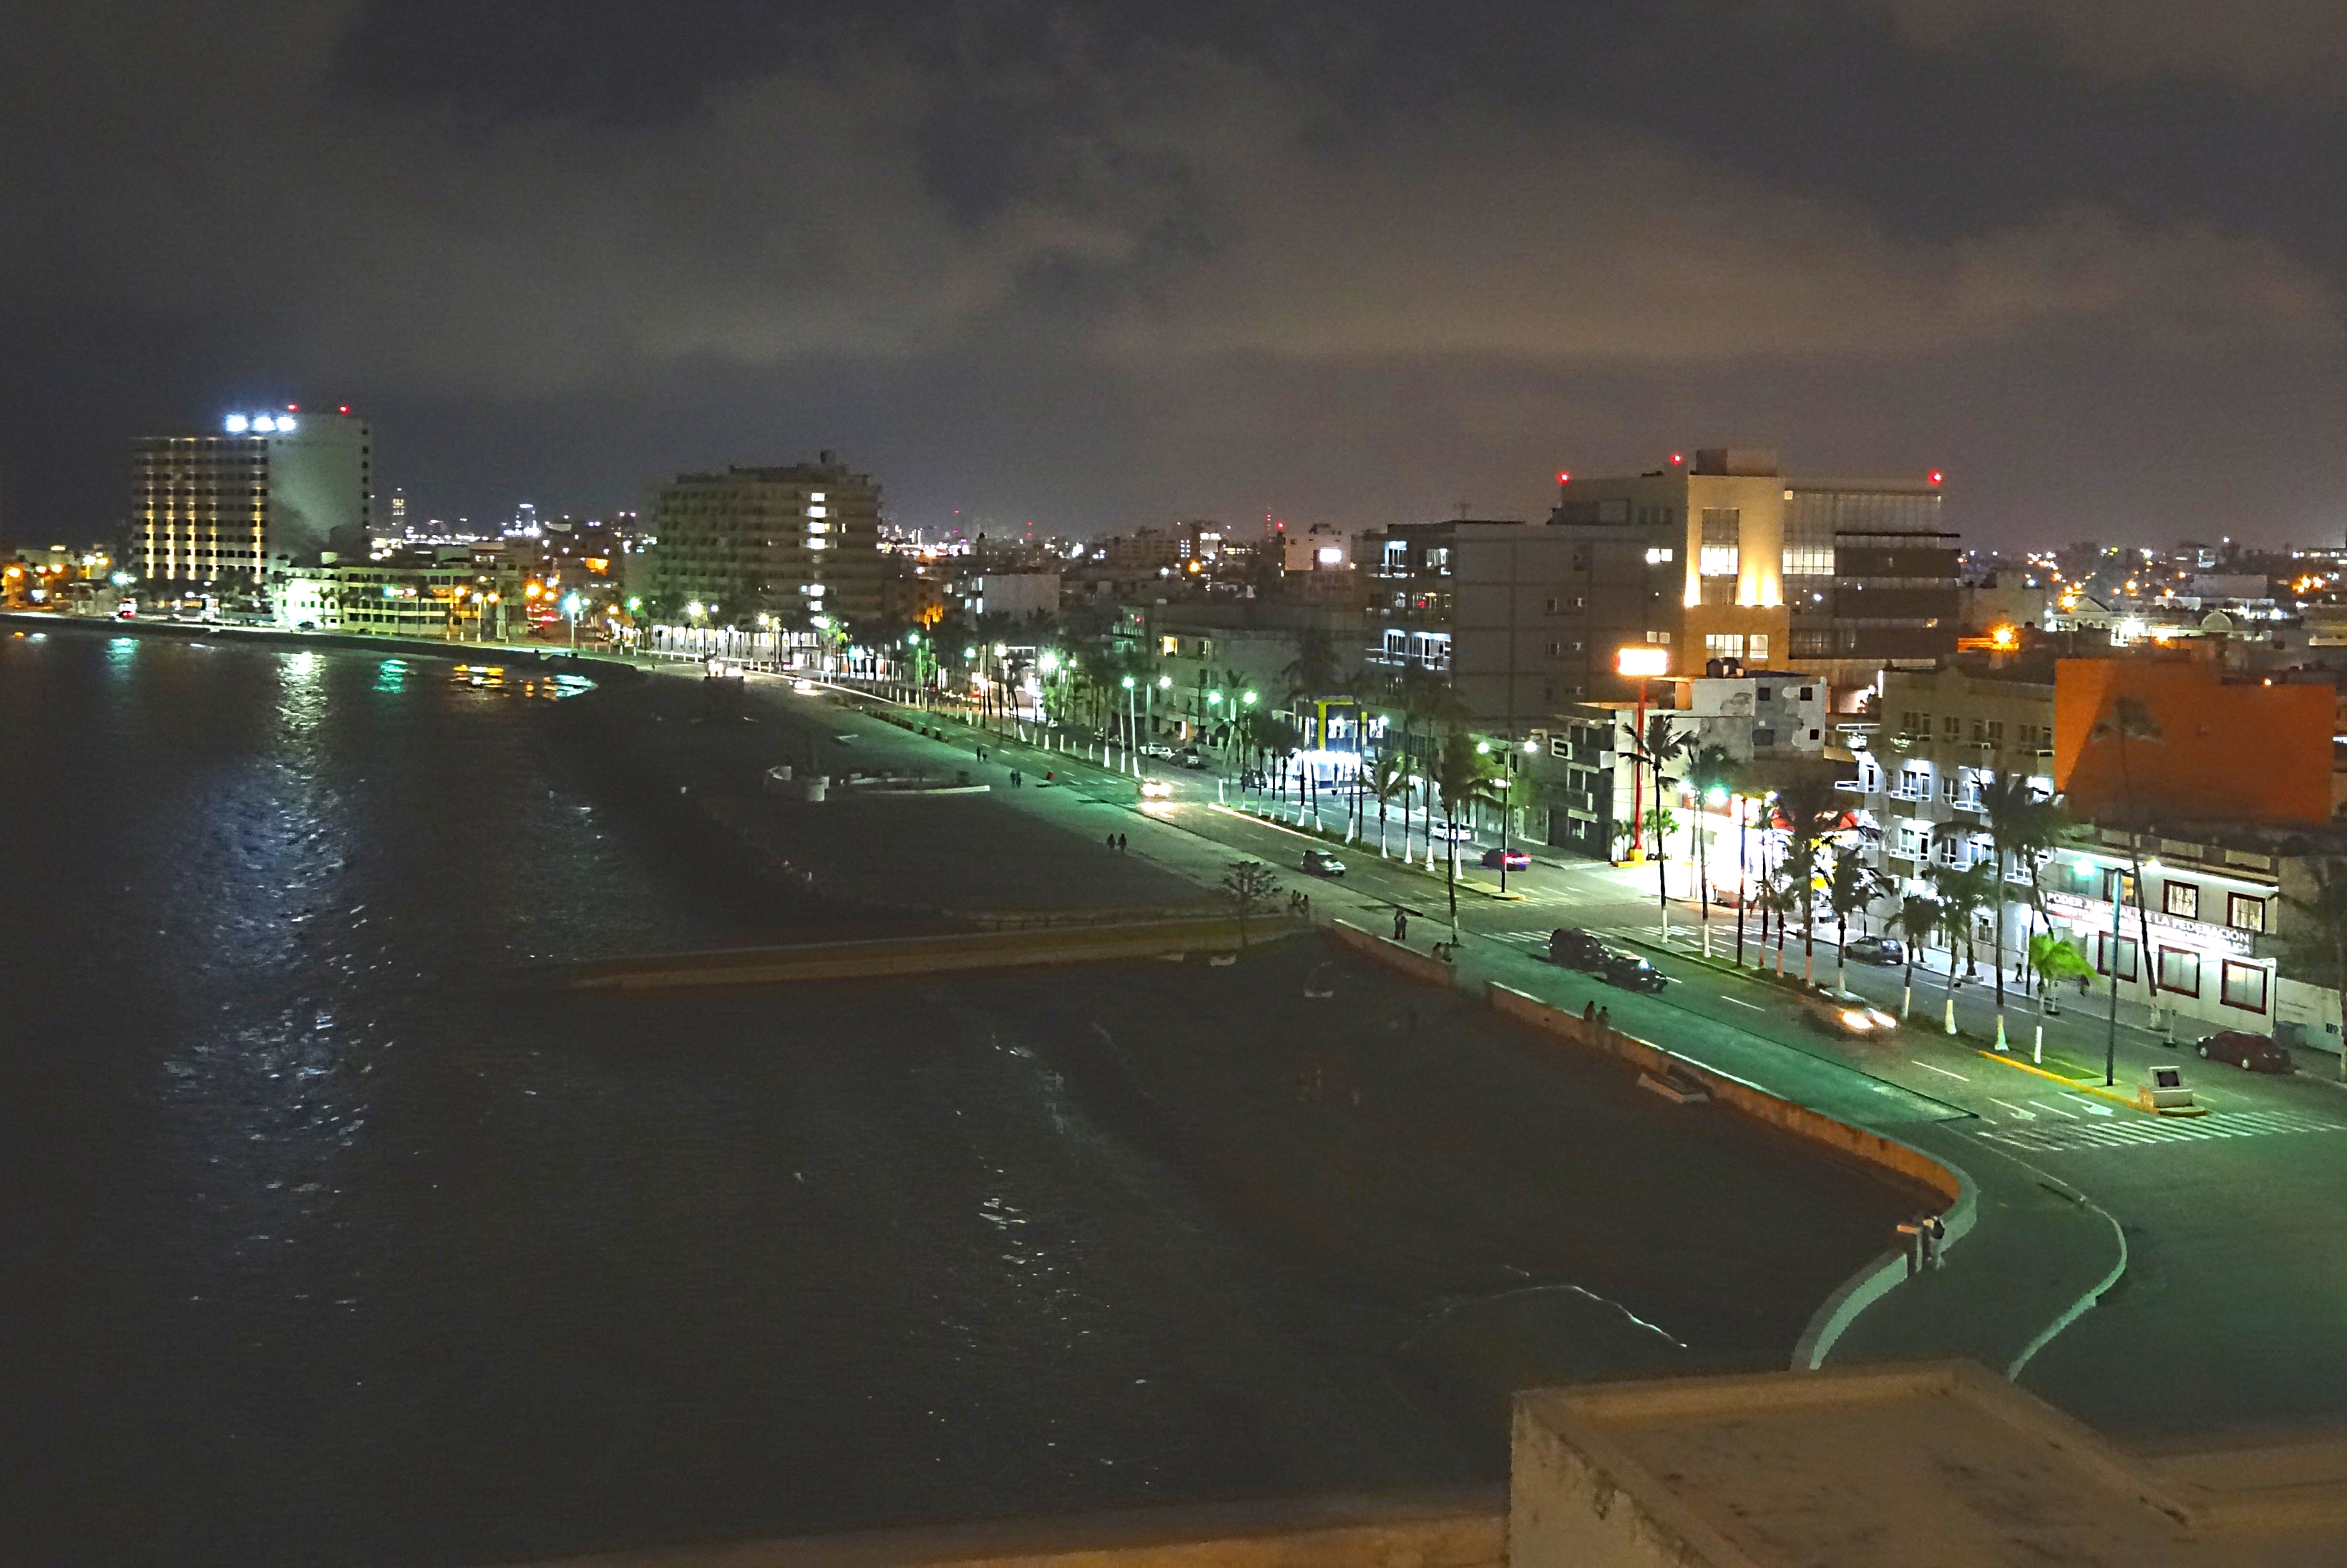 Большой портовый город Веракрус на берегу Мексиканского залива вечером. Фото Морошкина В.В.